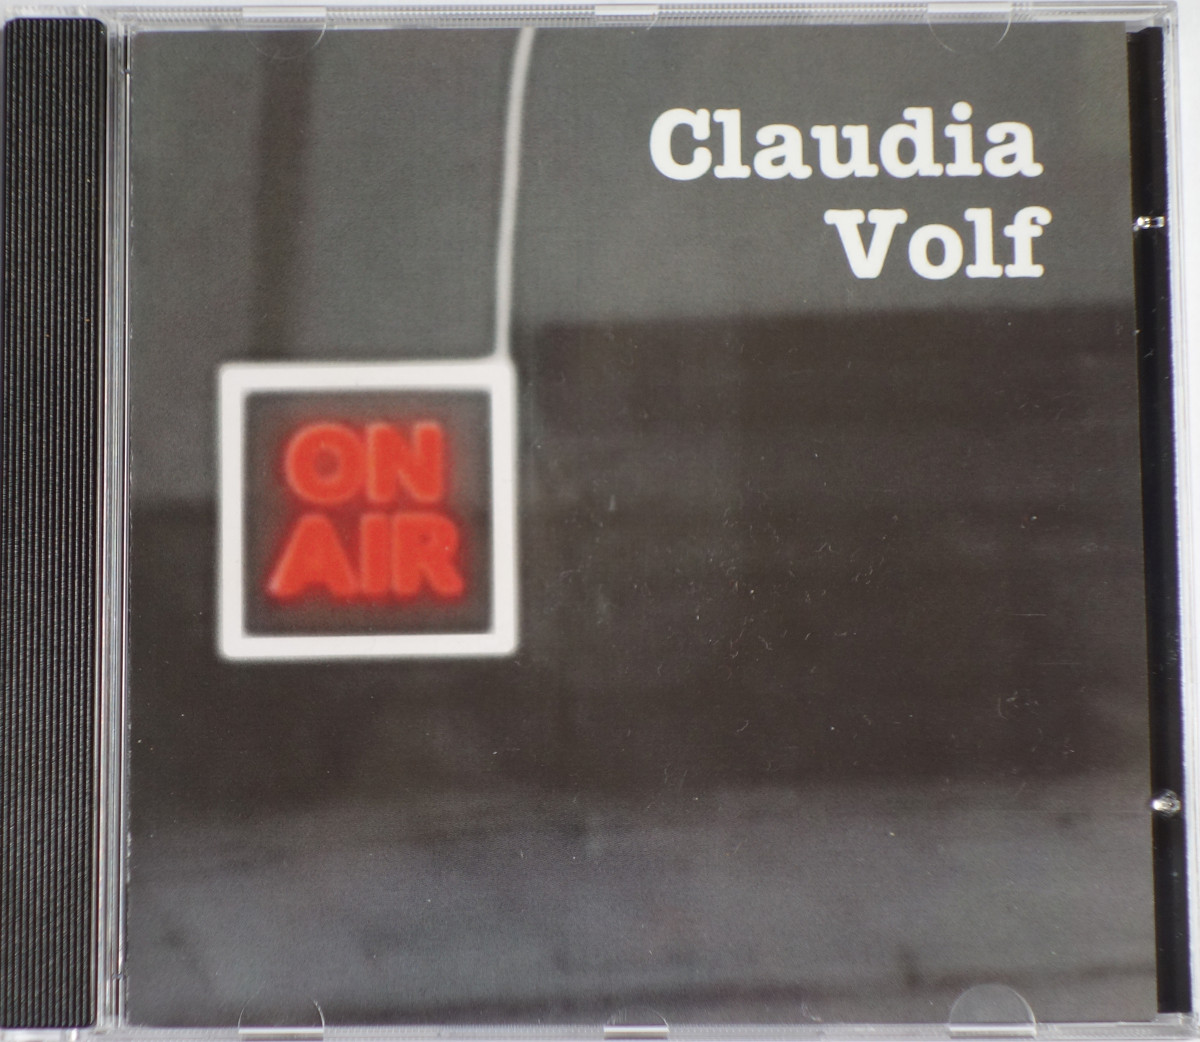 CD von Claudia Volf